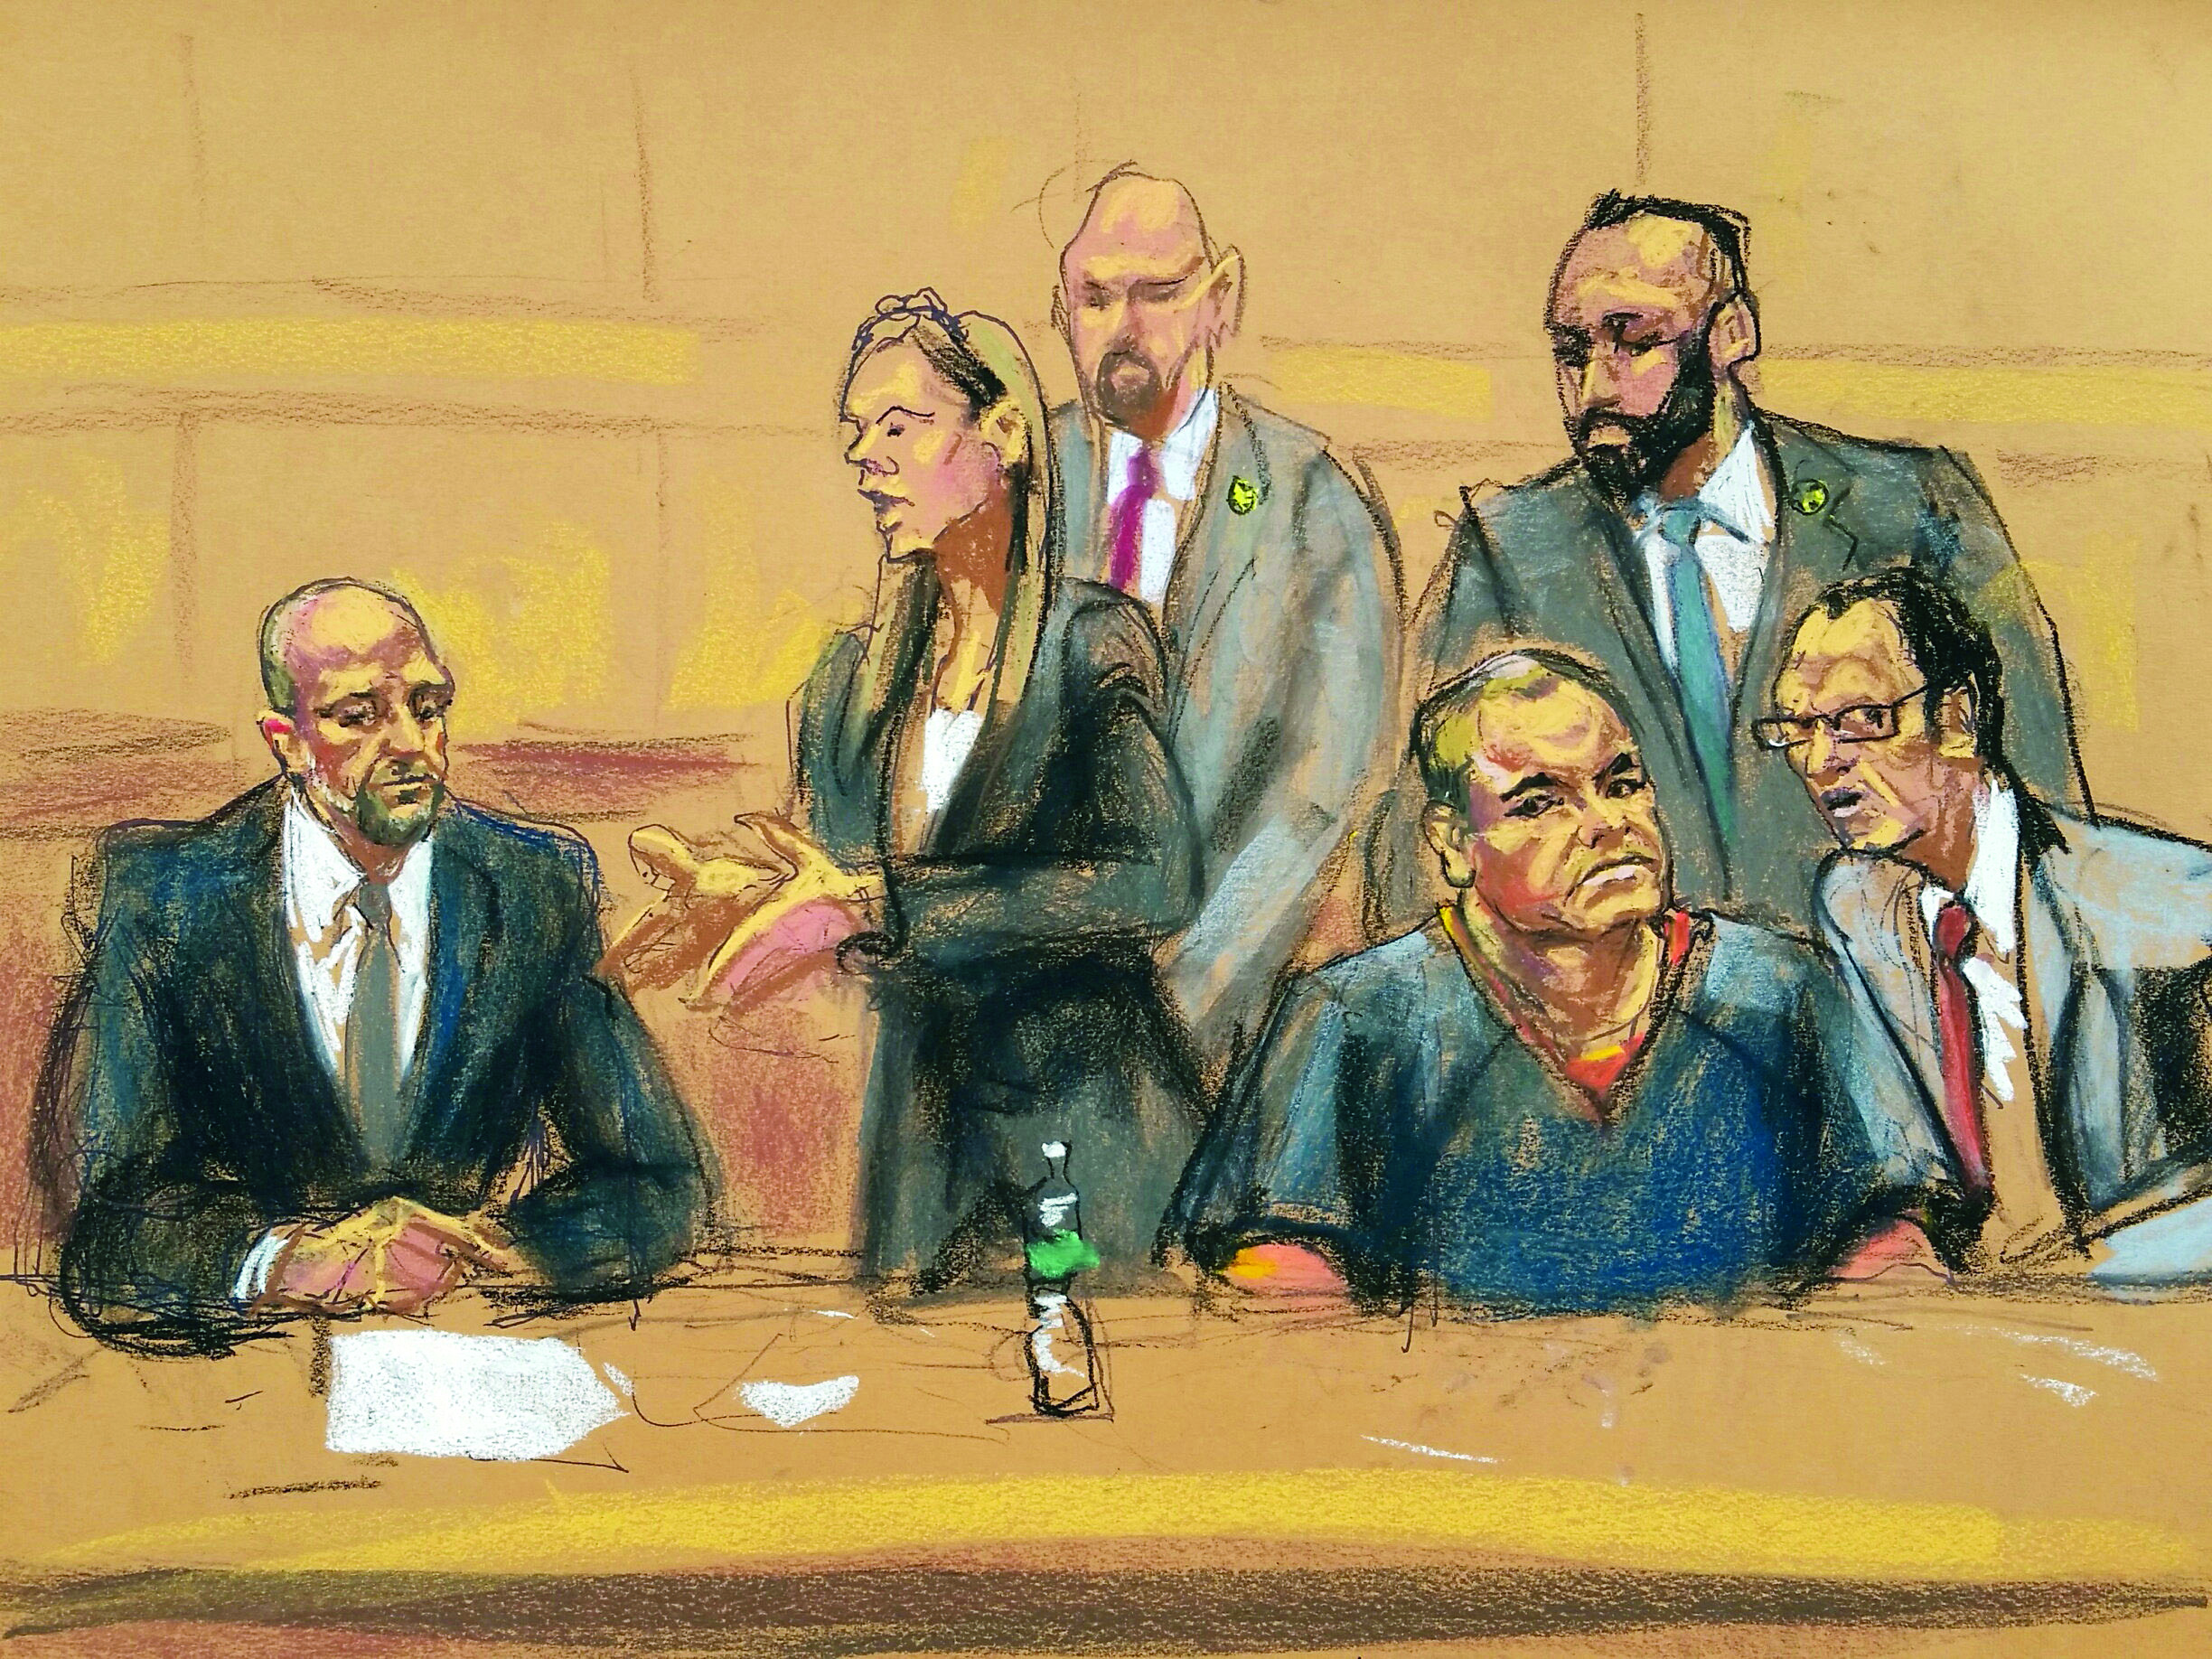 Juez planea llamar hasta a mil personas para formar jurado de juicio a "El Chapo"